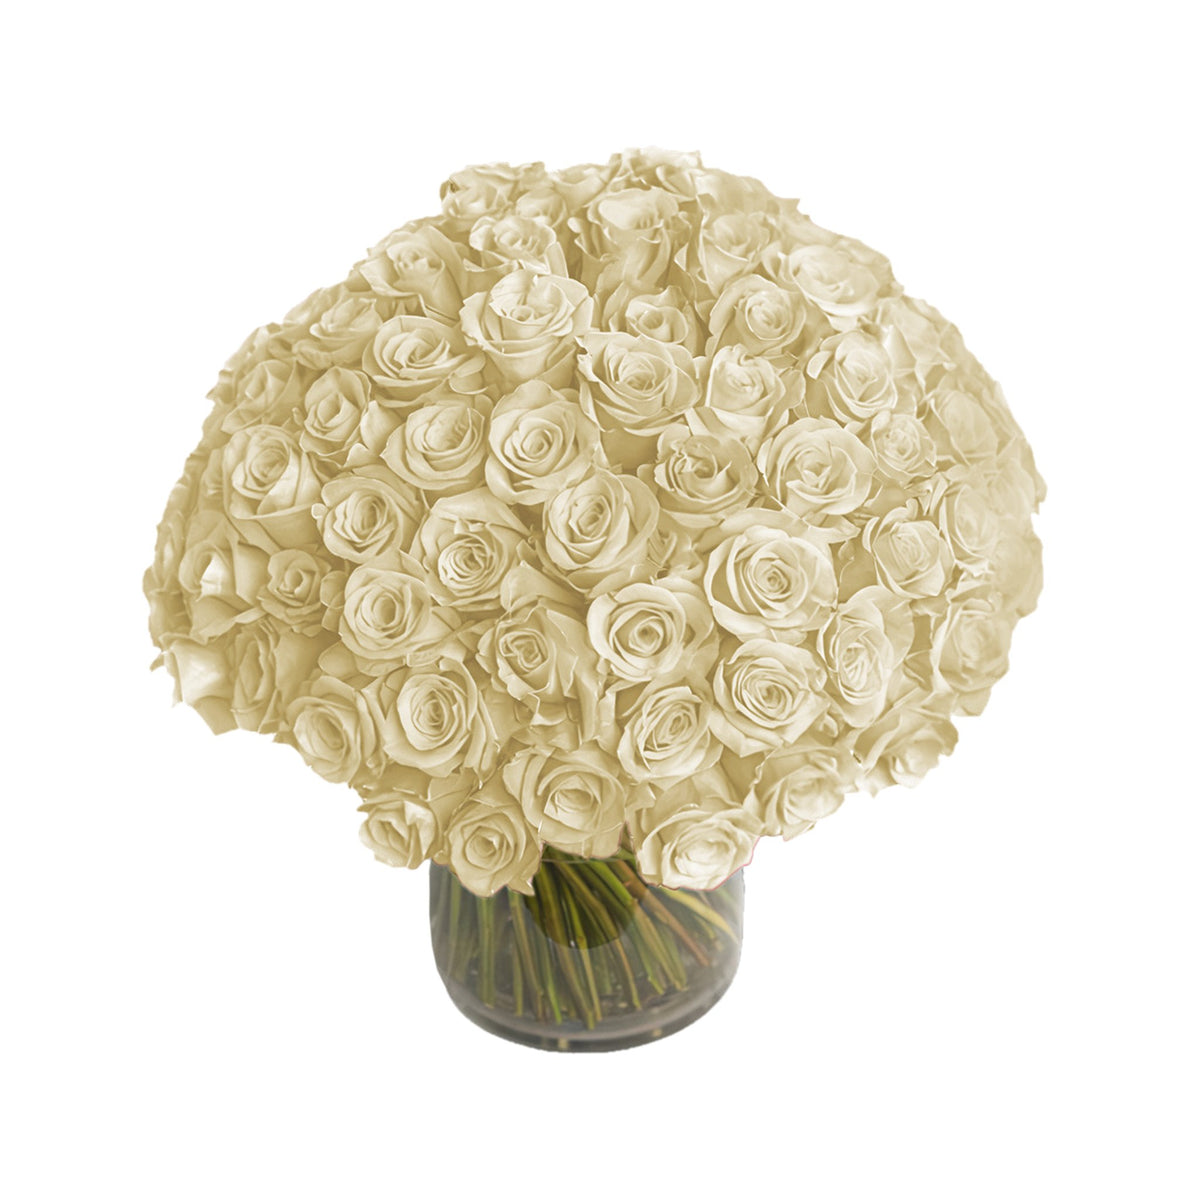 Fresh Roses in a Vase | 100 White Roses - Roses